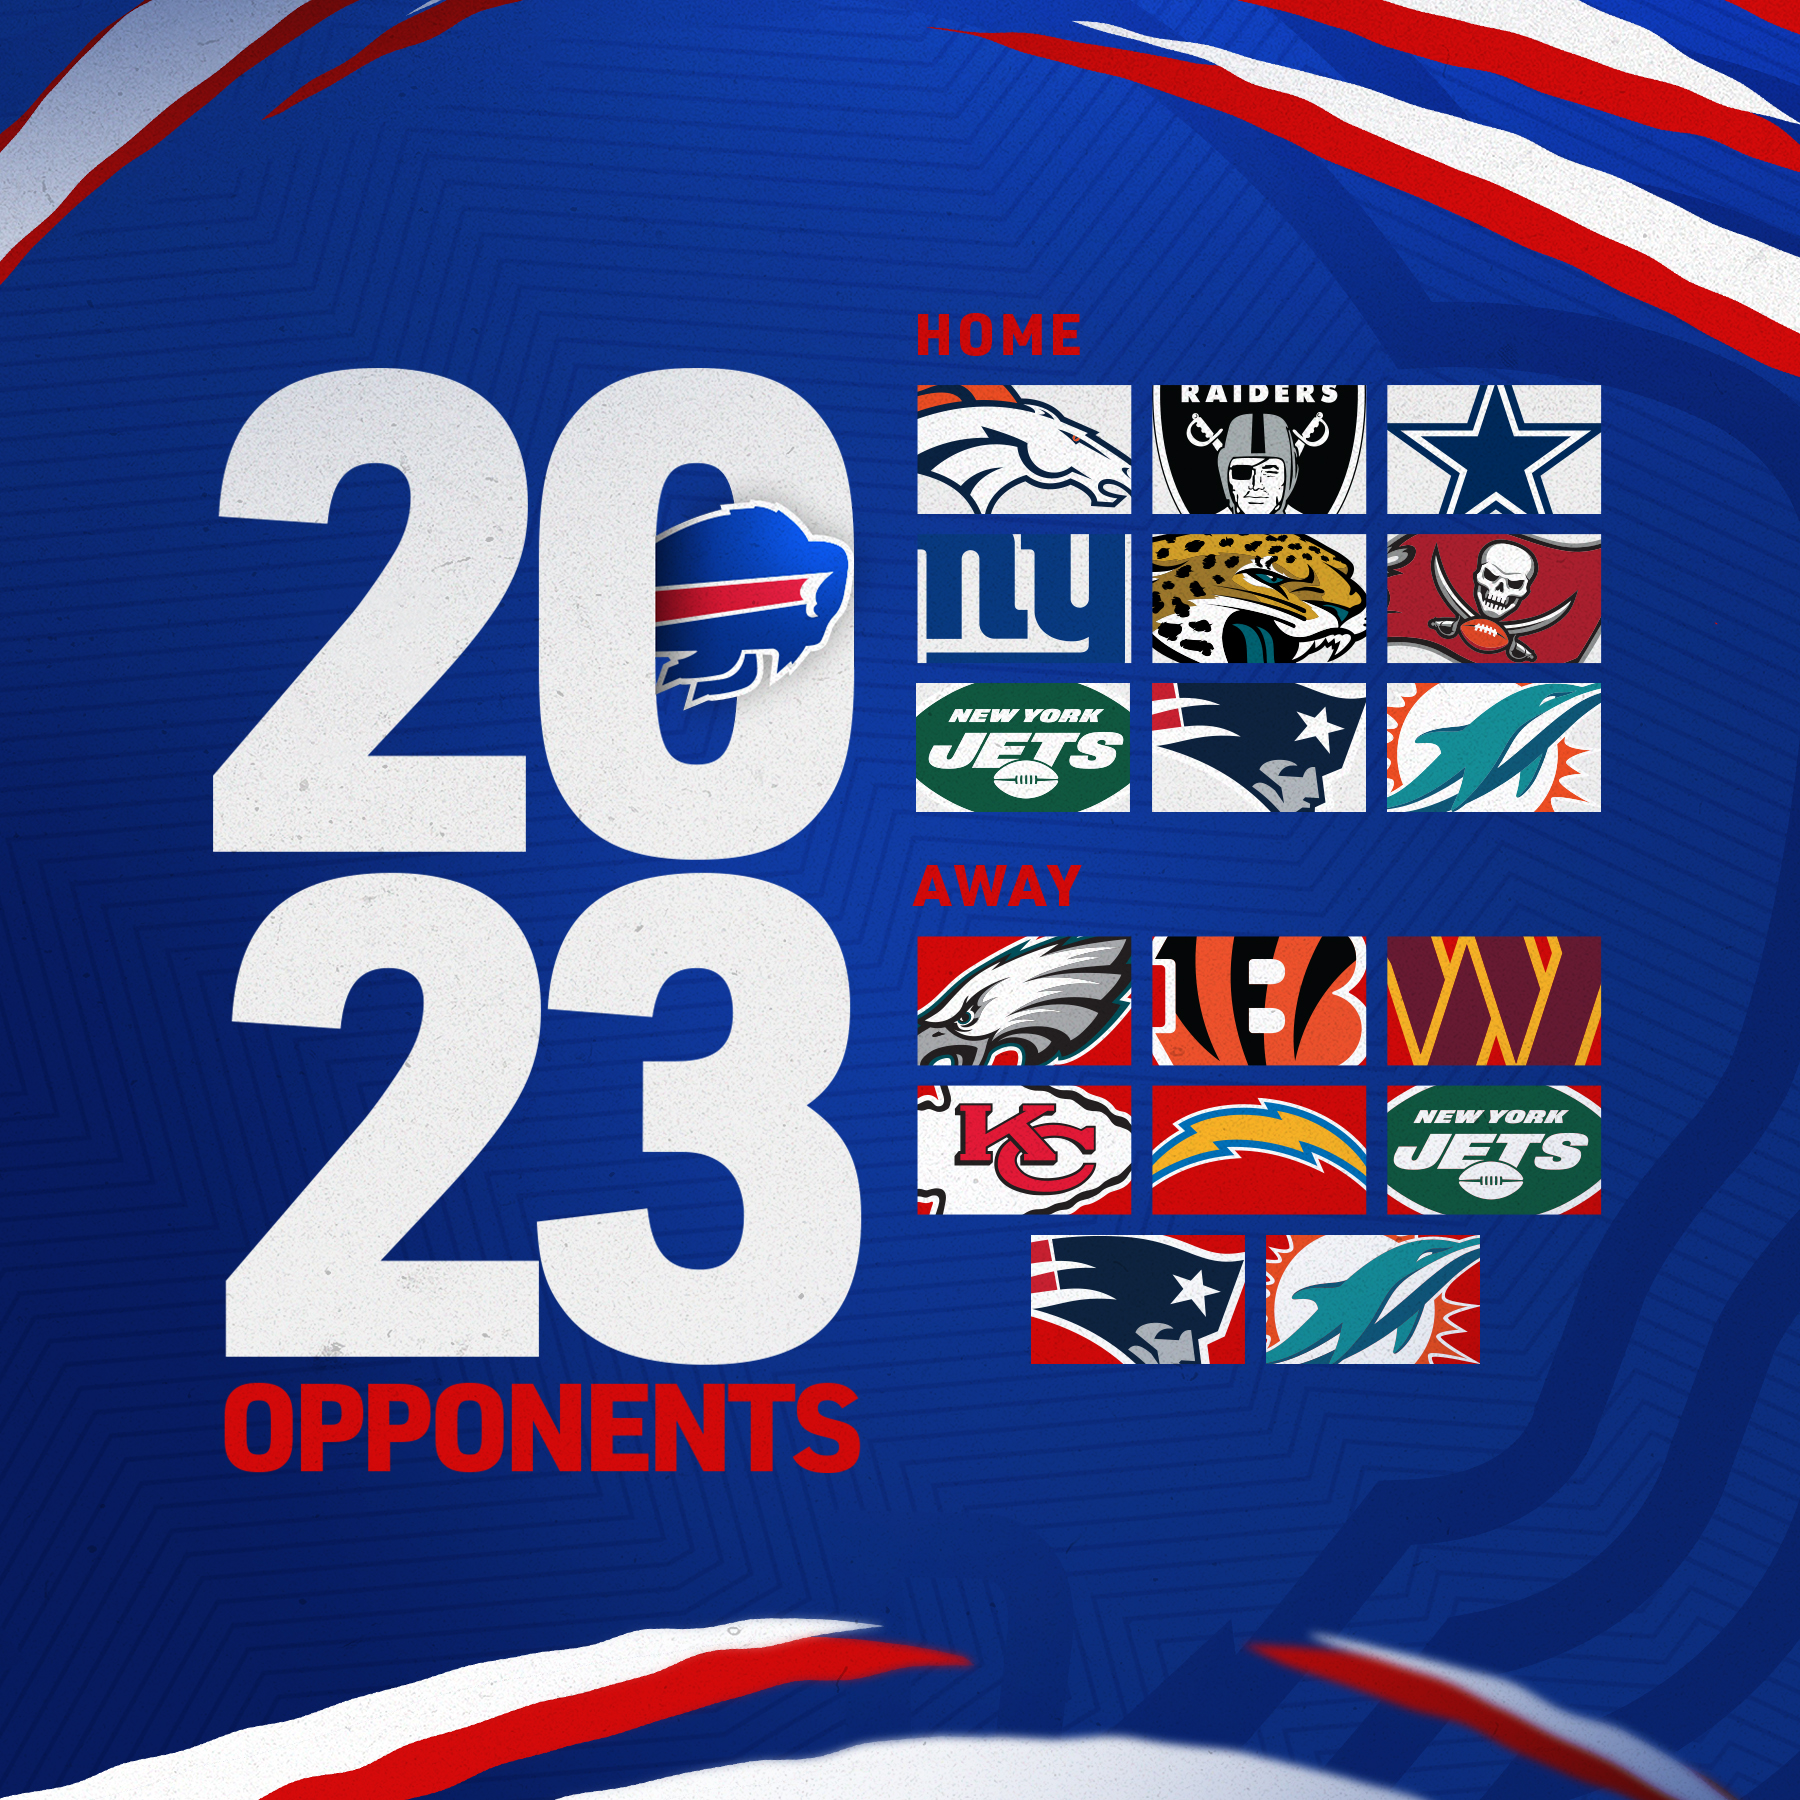 11 takeaways from the 2023 Buffalo Bills schedule